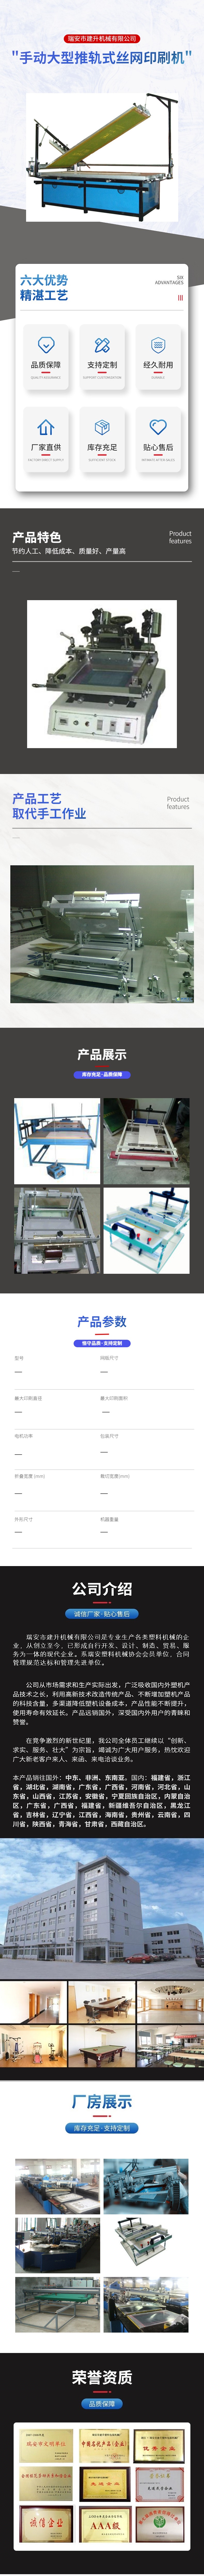 手动大型推轨式丝网印刷机